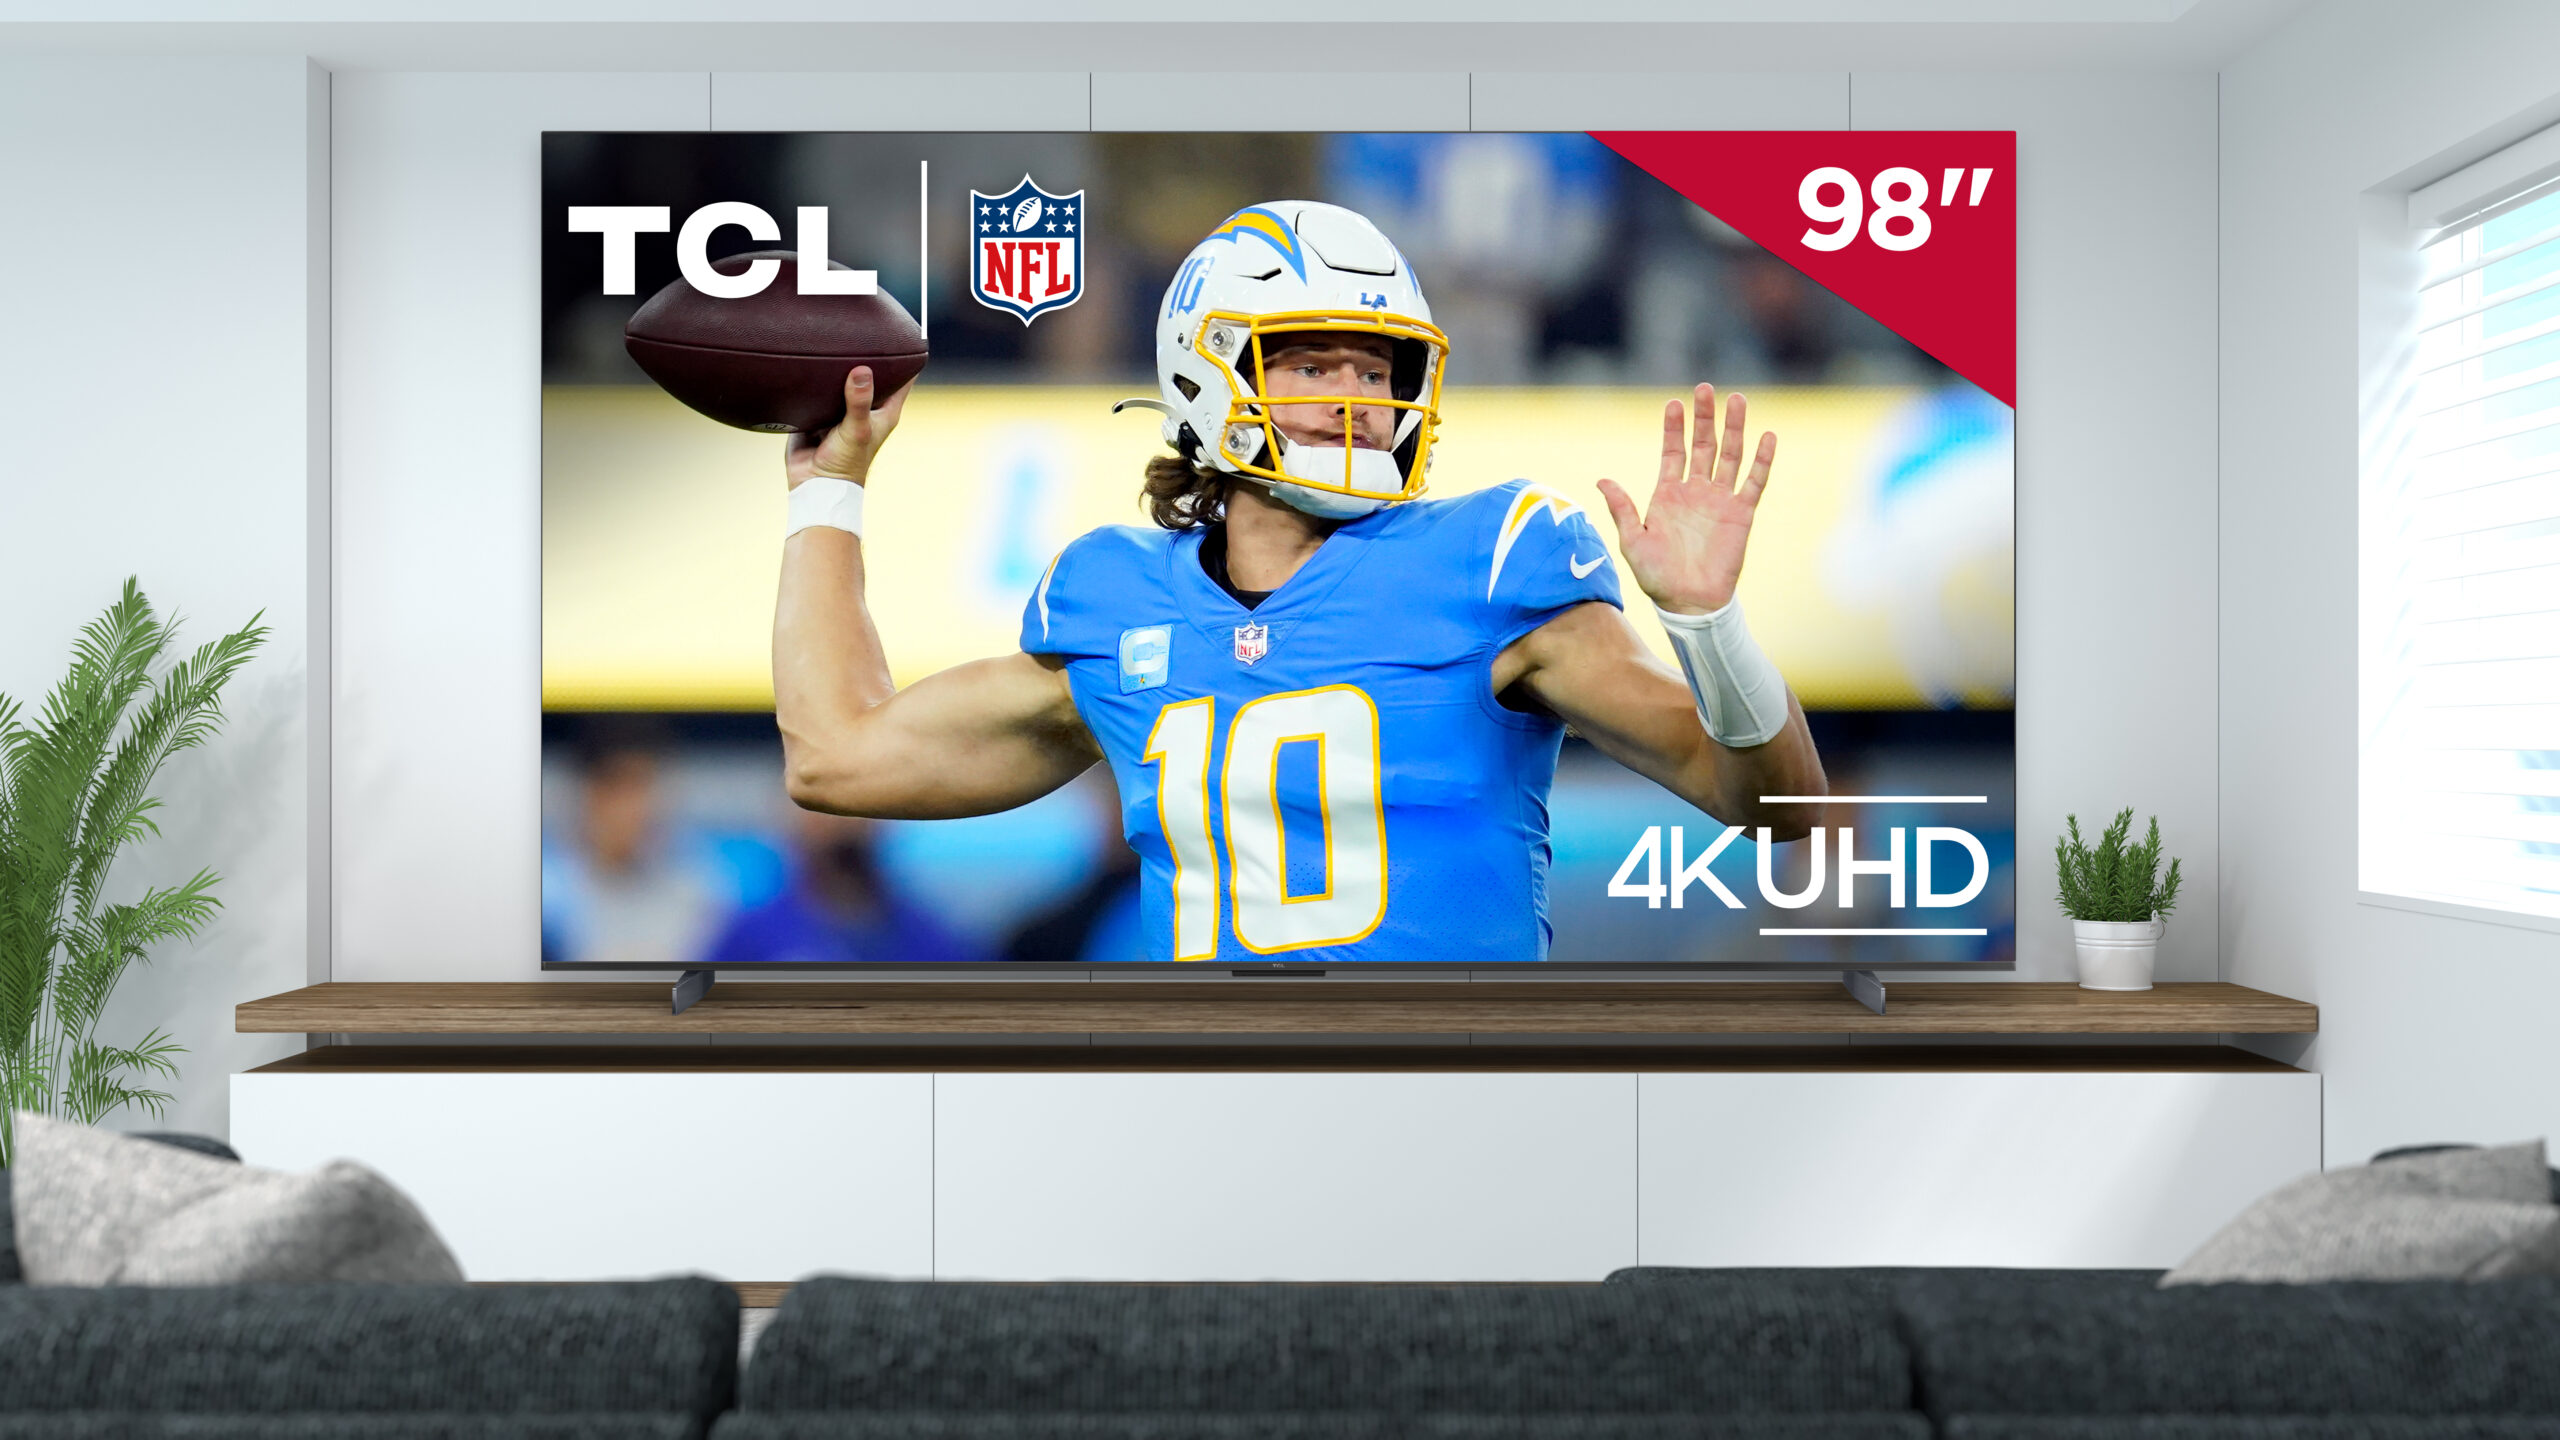 El nuevo televisor S5 de 98 pulgadas de TCL está disponible con una oferta de NFL Sunday Ticket